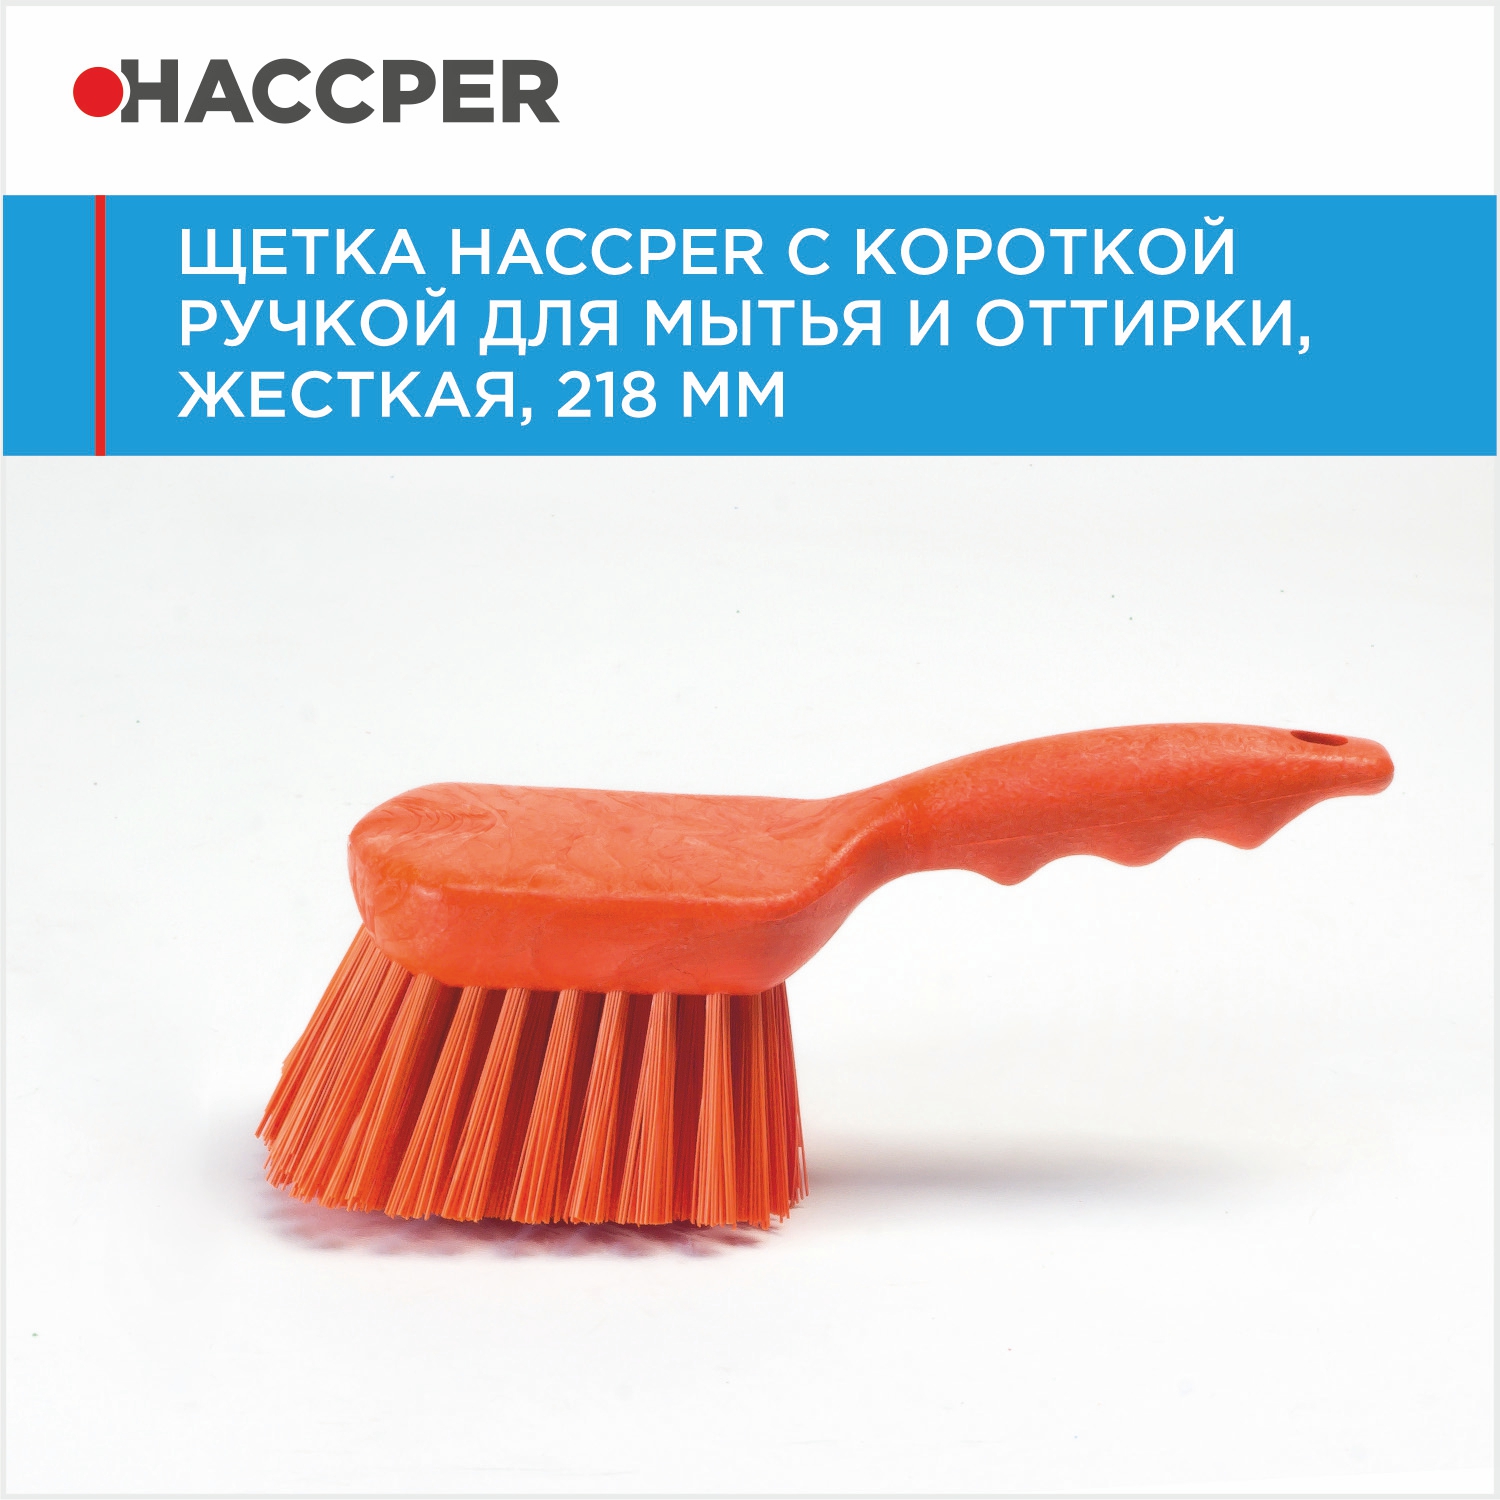 Щетка HACCPER с короткой ручкой для мытья и оттирки, жесткая, 218 мм, оранжевая